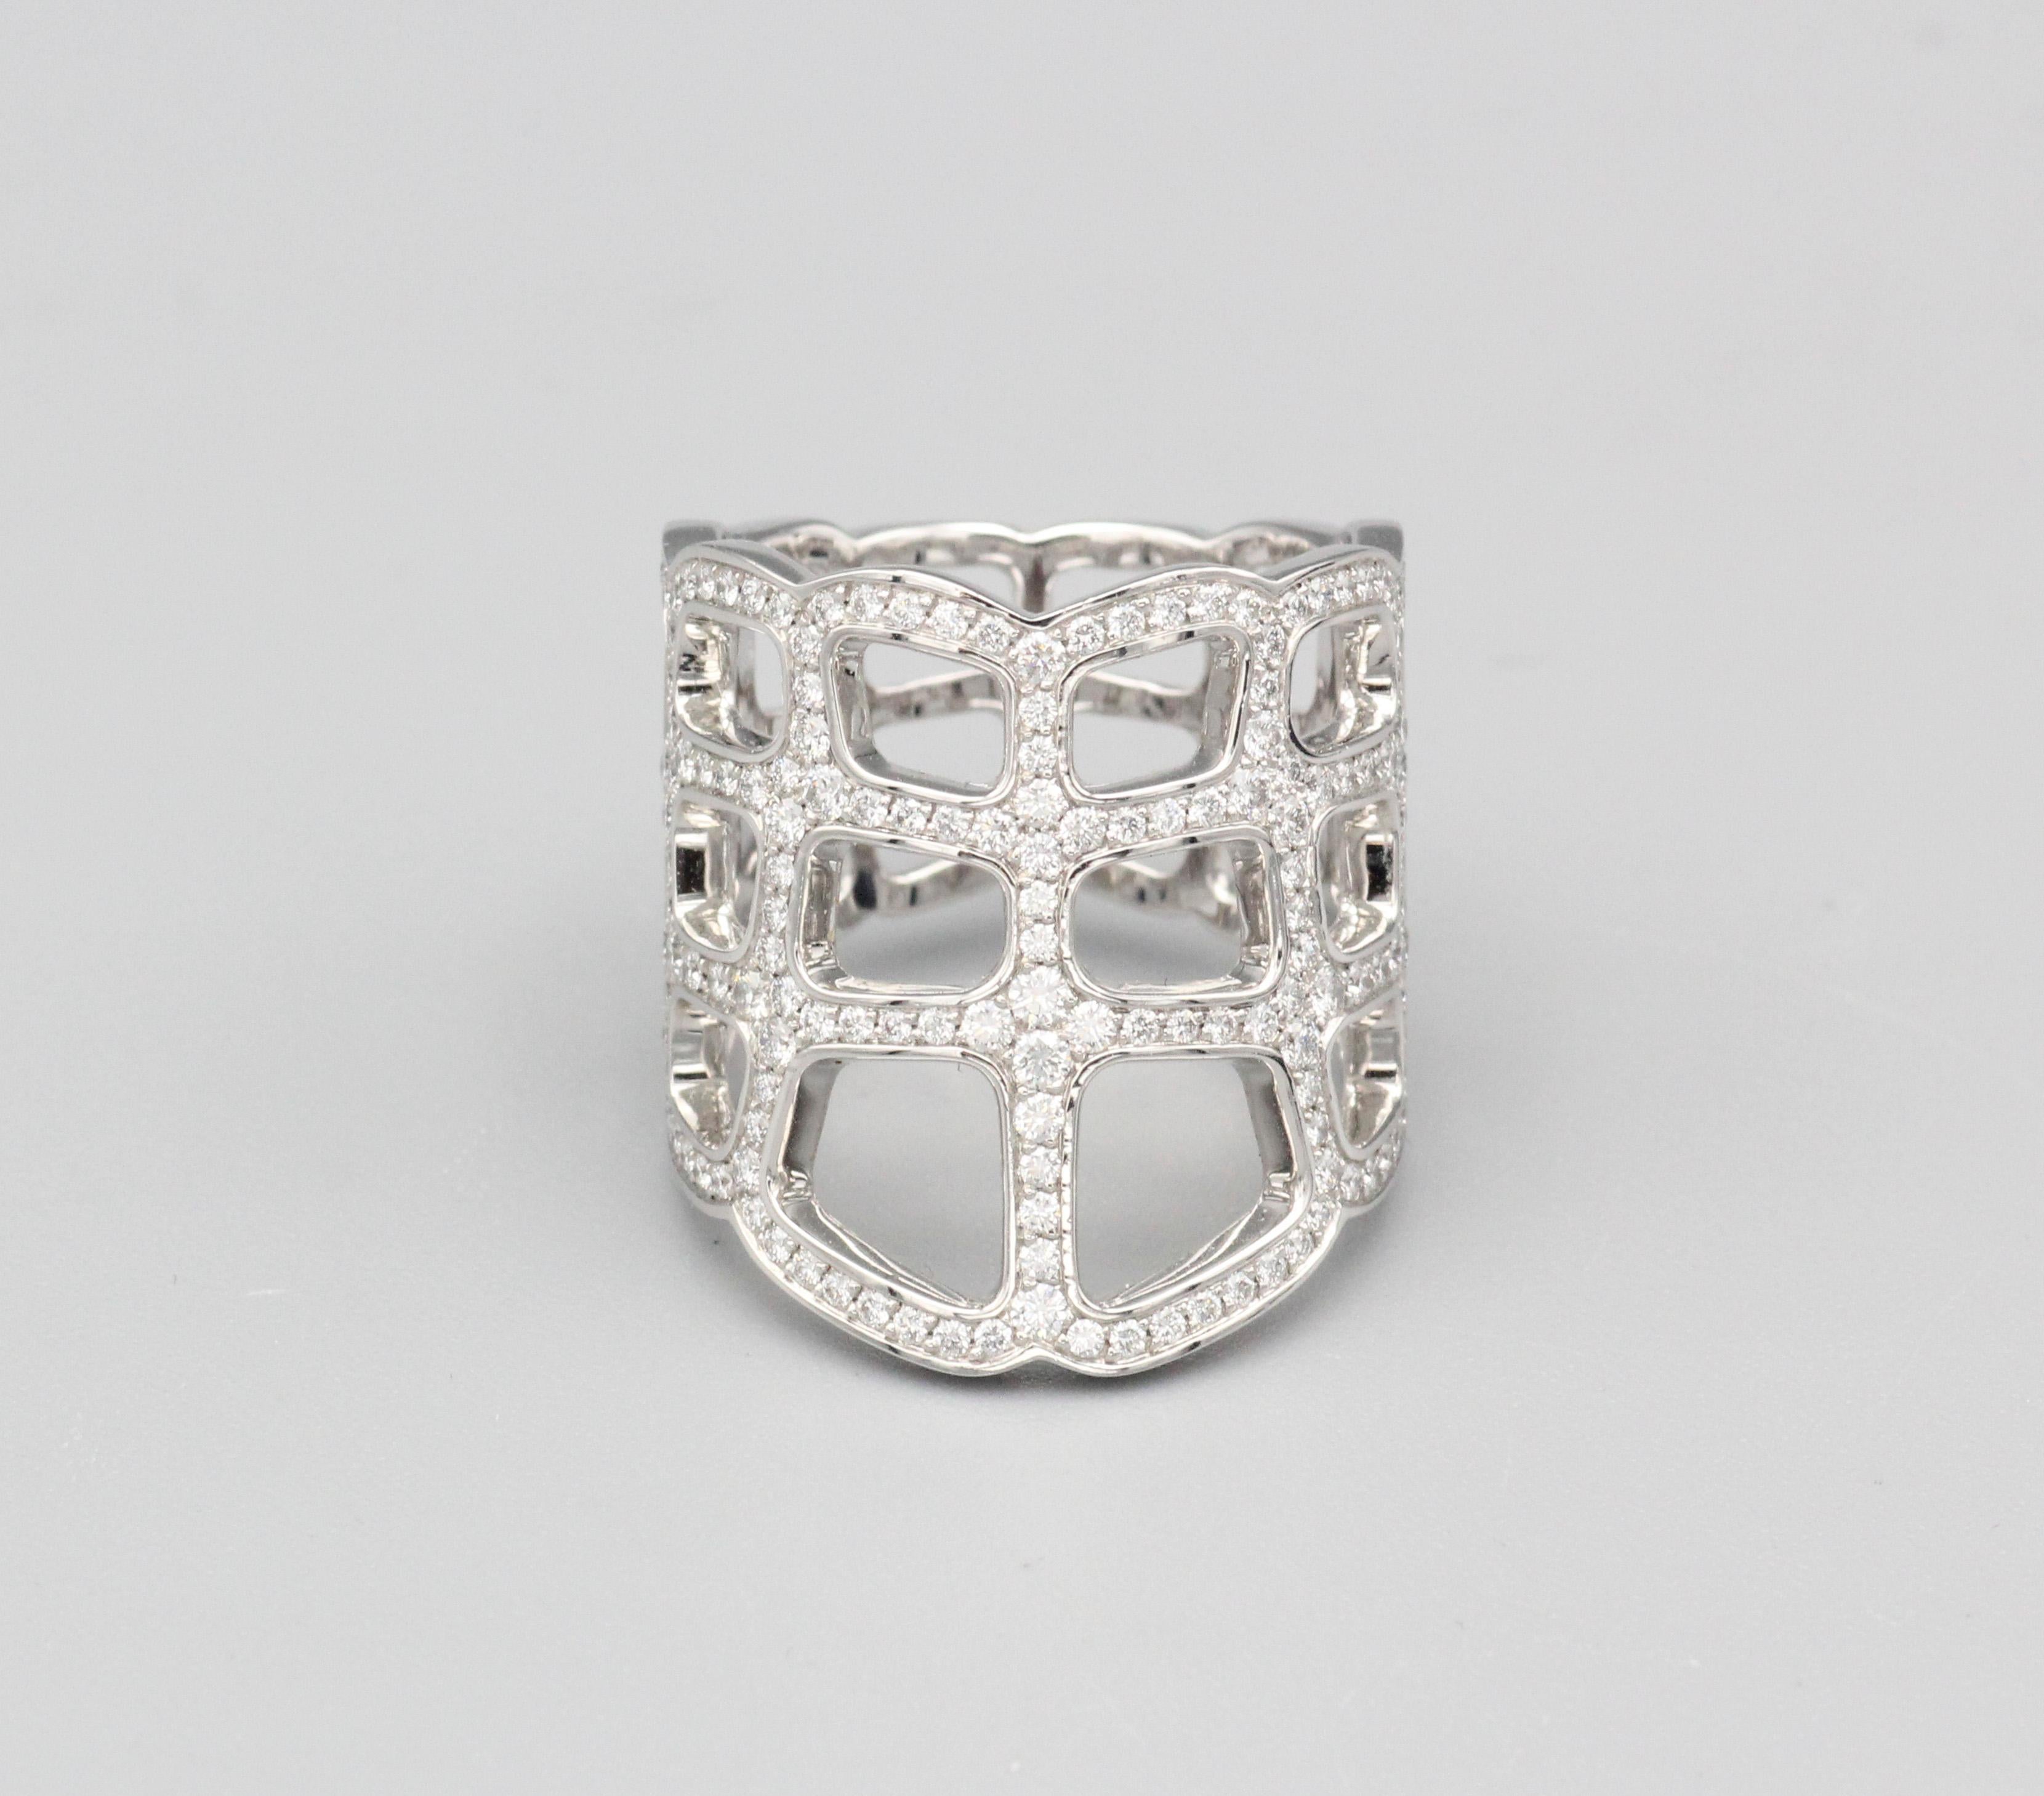 Erhöhen Sie Ihren Sinn für Stil mit dem Hermes Niloticus Ombre Diamond 18k White Gold Ring - eine exquisite Verkörperung von Luxus, Raffinesse und unvergleichlicher Handwerkskunst. Dieser besondere Ring aus dem renommierten Hause Hermes verbindet